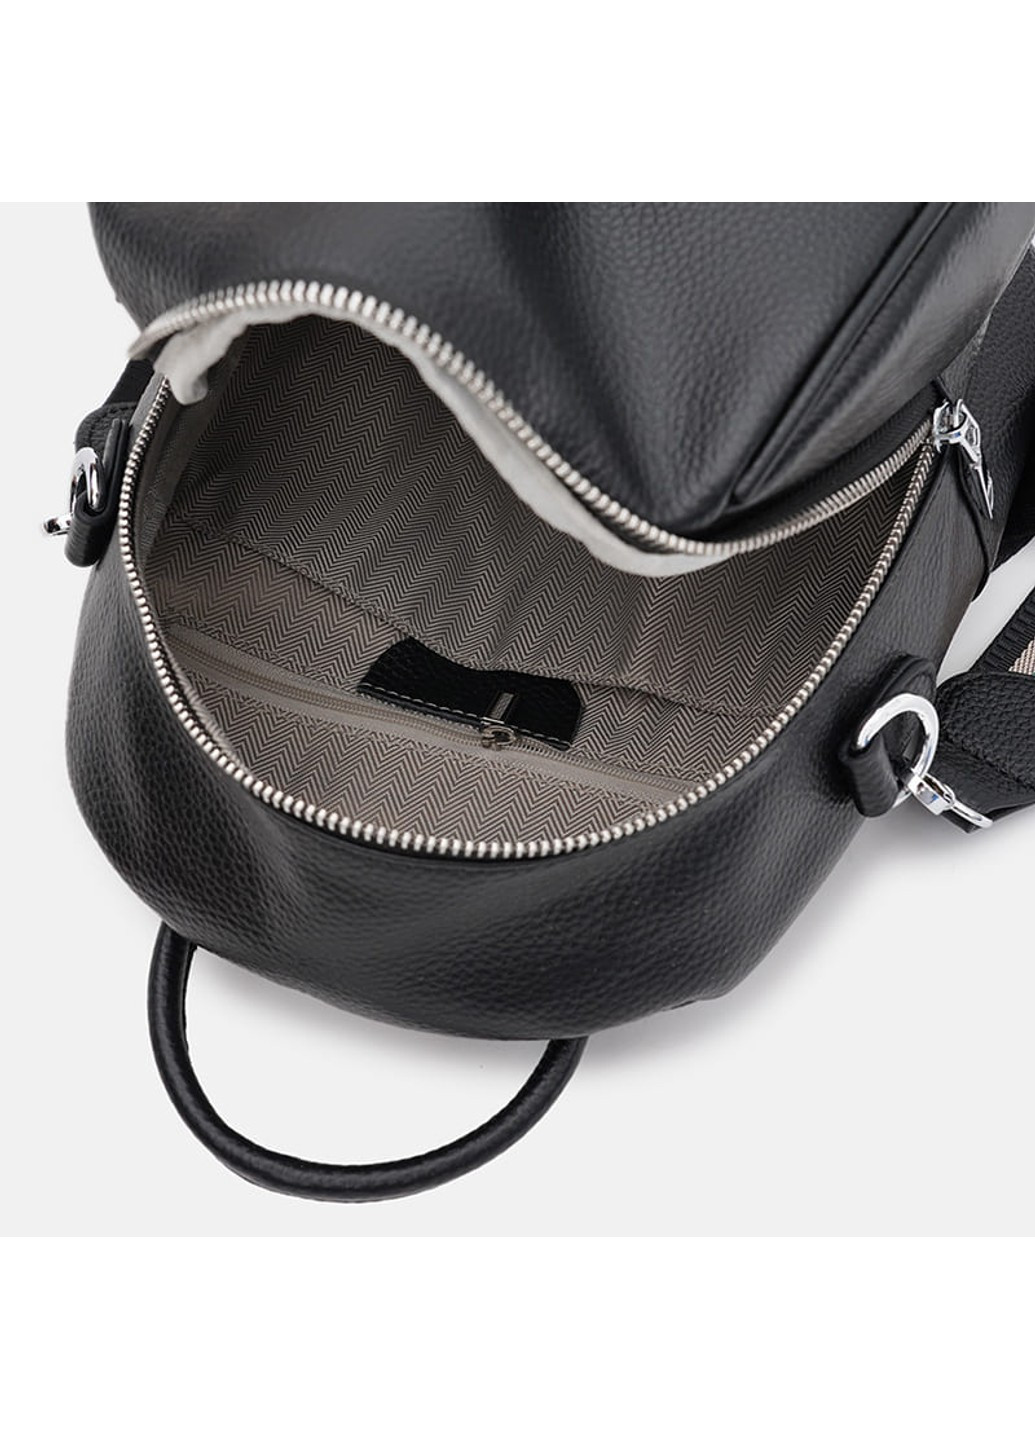 Шкіряний жіночий рюкзак K188815bl-black Ricco Grande (266144088)